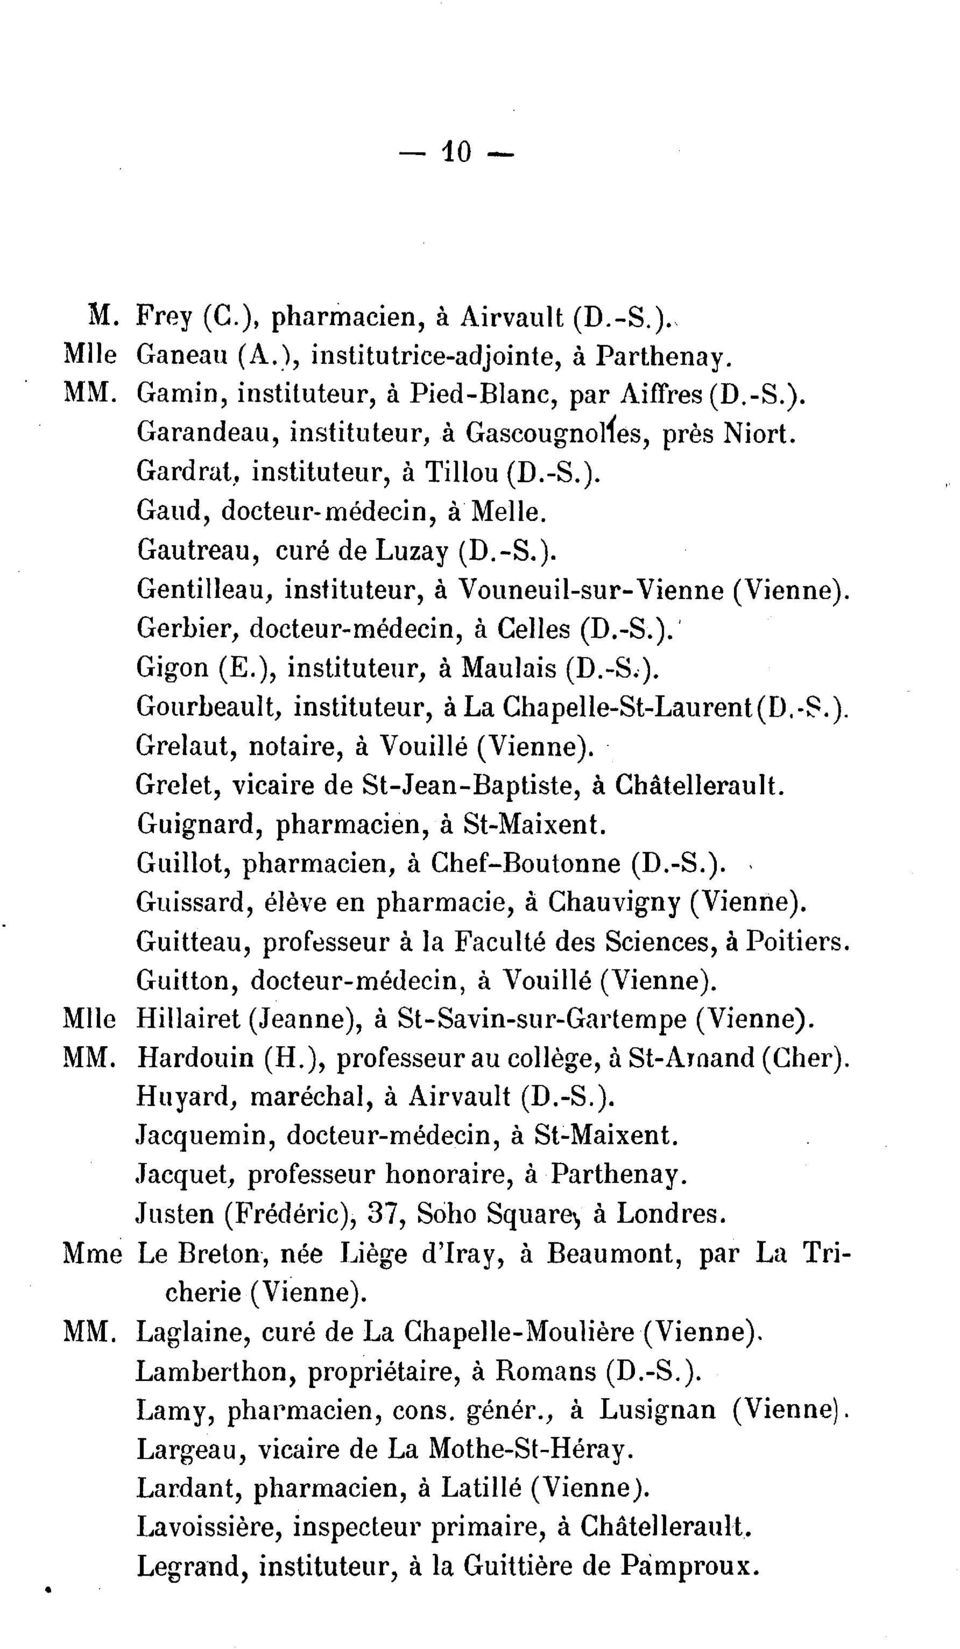 Gerbier, docteur-medecin, a Celles (D.-S. ). I Gigon (E.), instituteur, a Maulais (D.-S.. ). Gourbeault, instituteur, a La Chapelle-St-Laurent (D.-S. ). Grelaut, notaire, a Vouille (Vienne ).